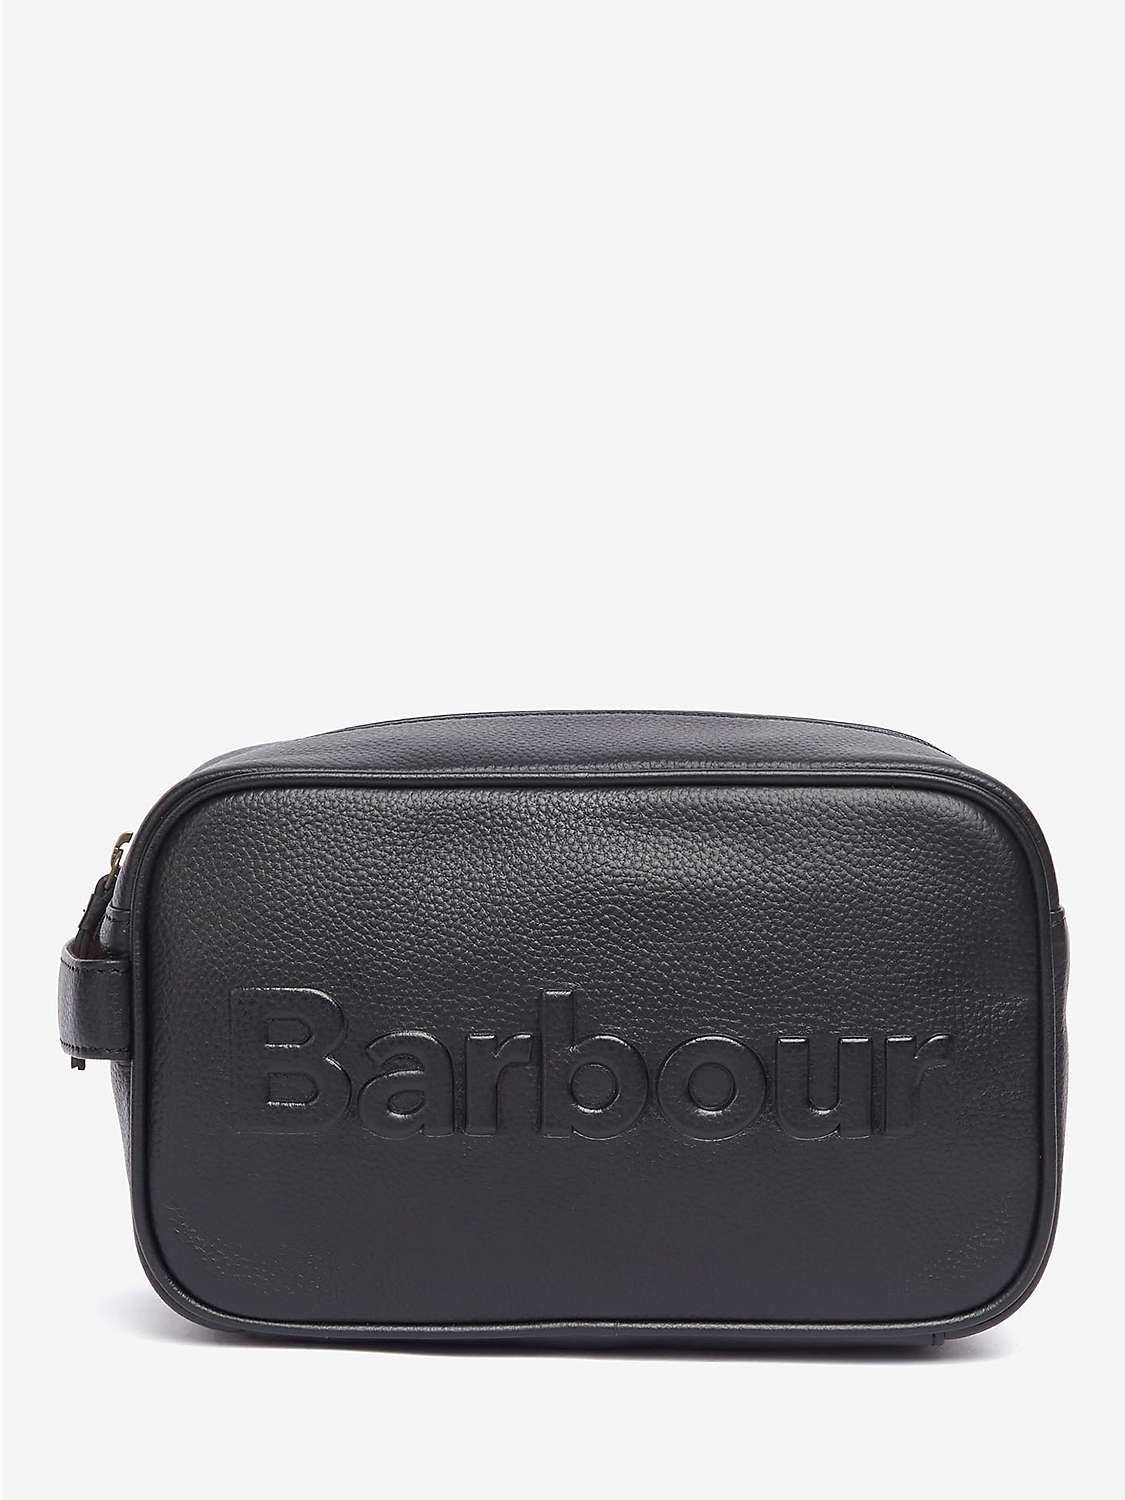 Buy Barbour Debossed Logo Wash Bag, Black Online at johnlewis.com